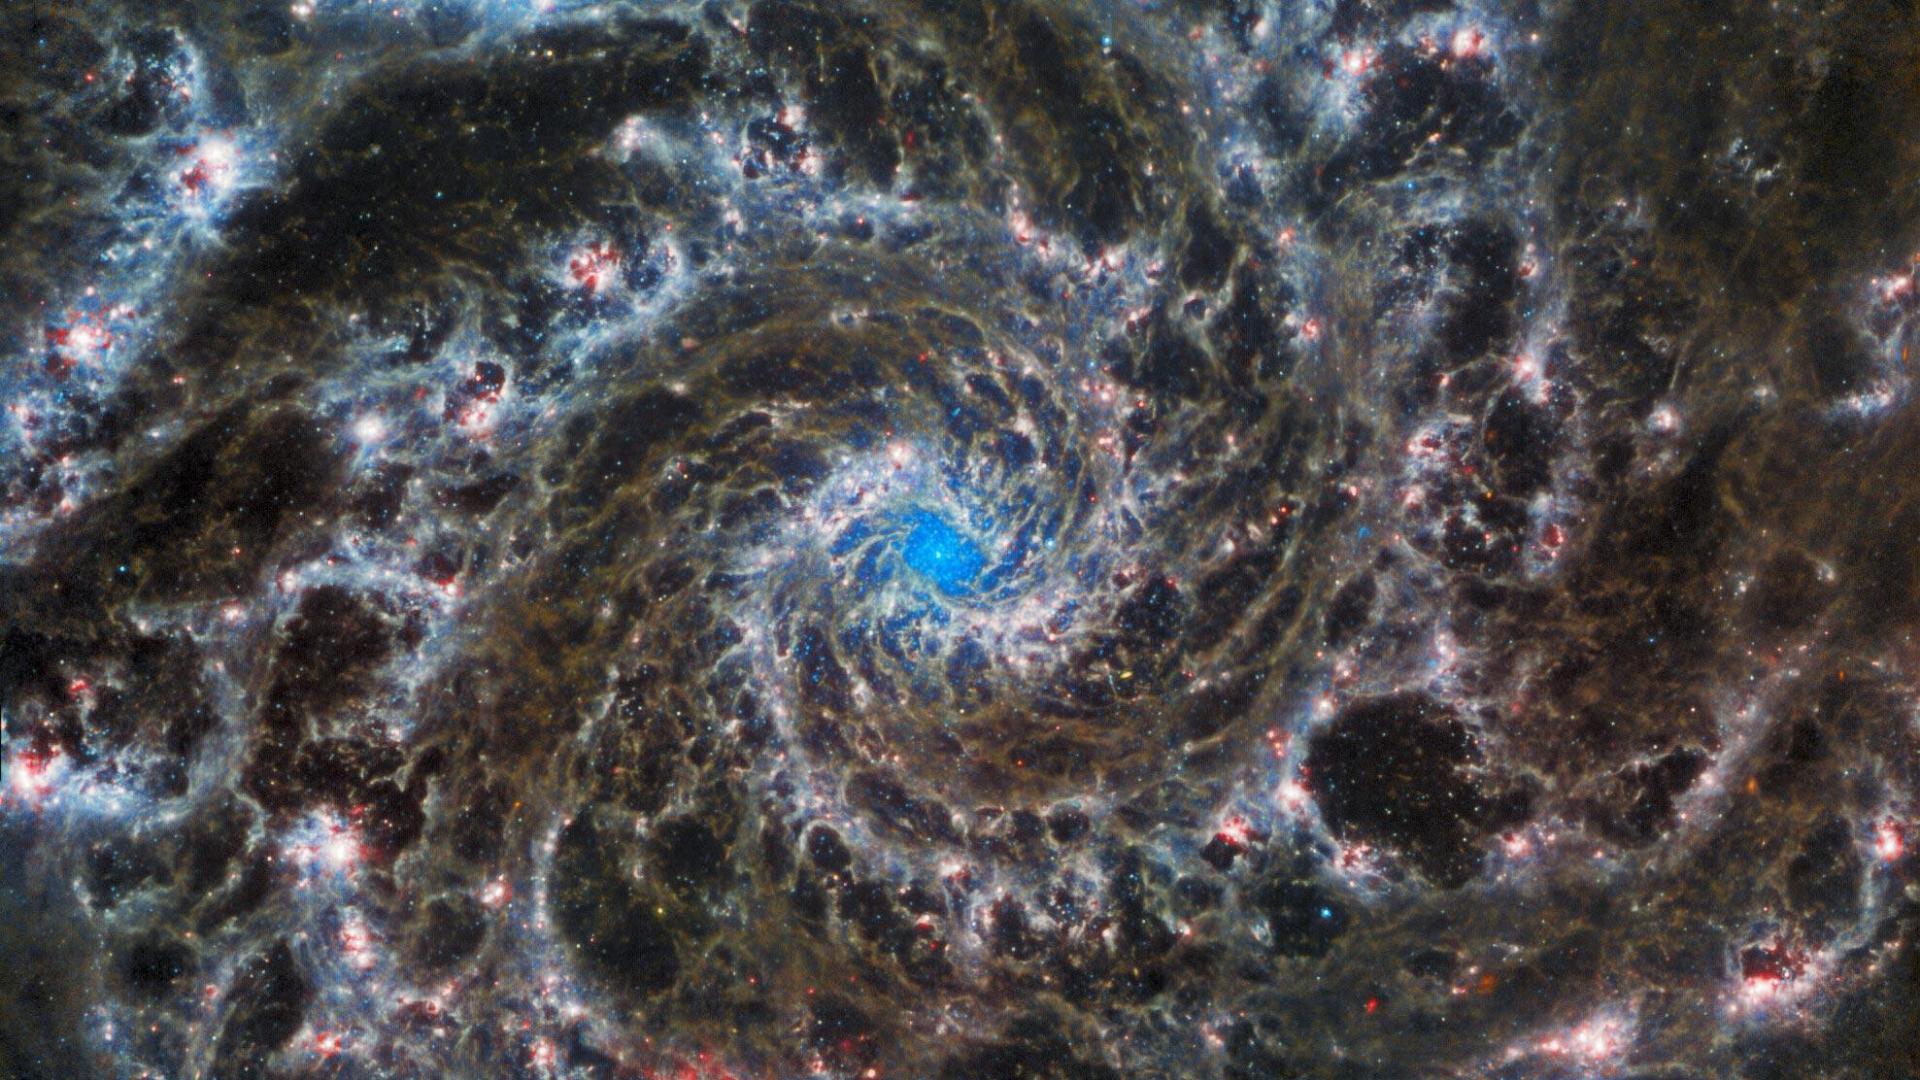 壮观的“幽灵星系”图像展示了韦伯望远镜的强大力量